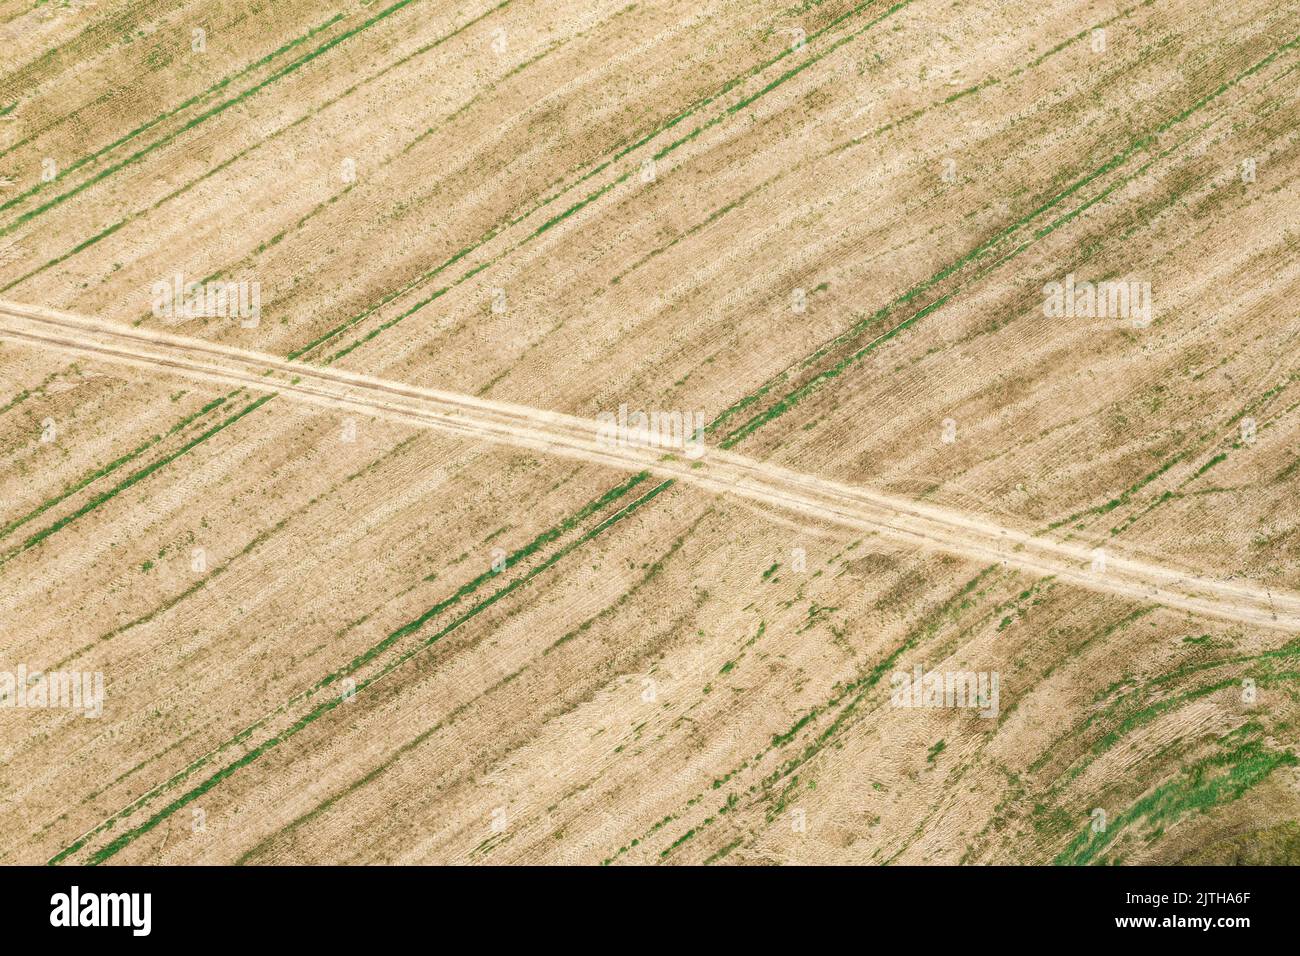 vista superior aérea del campo agrícola después de la cosecha de trigo con camino en un soleado día de otoño Foto de stock